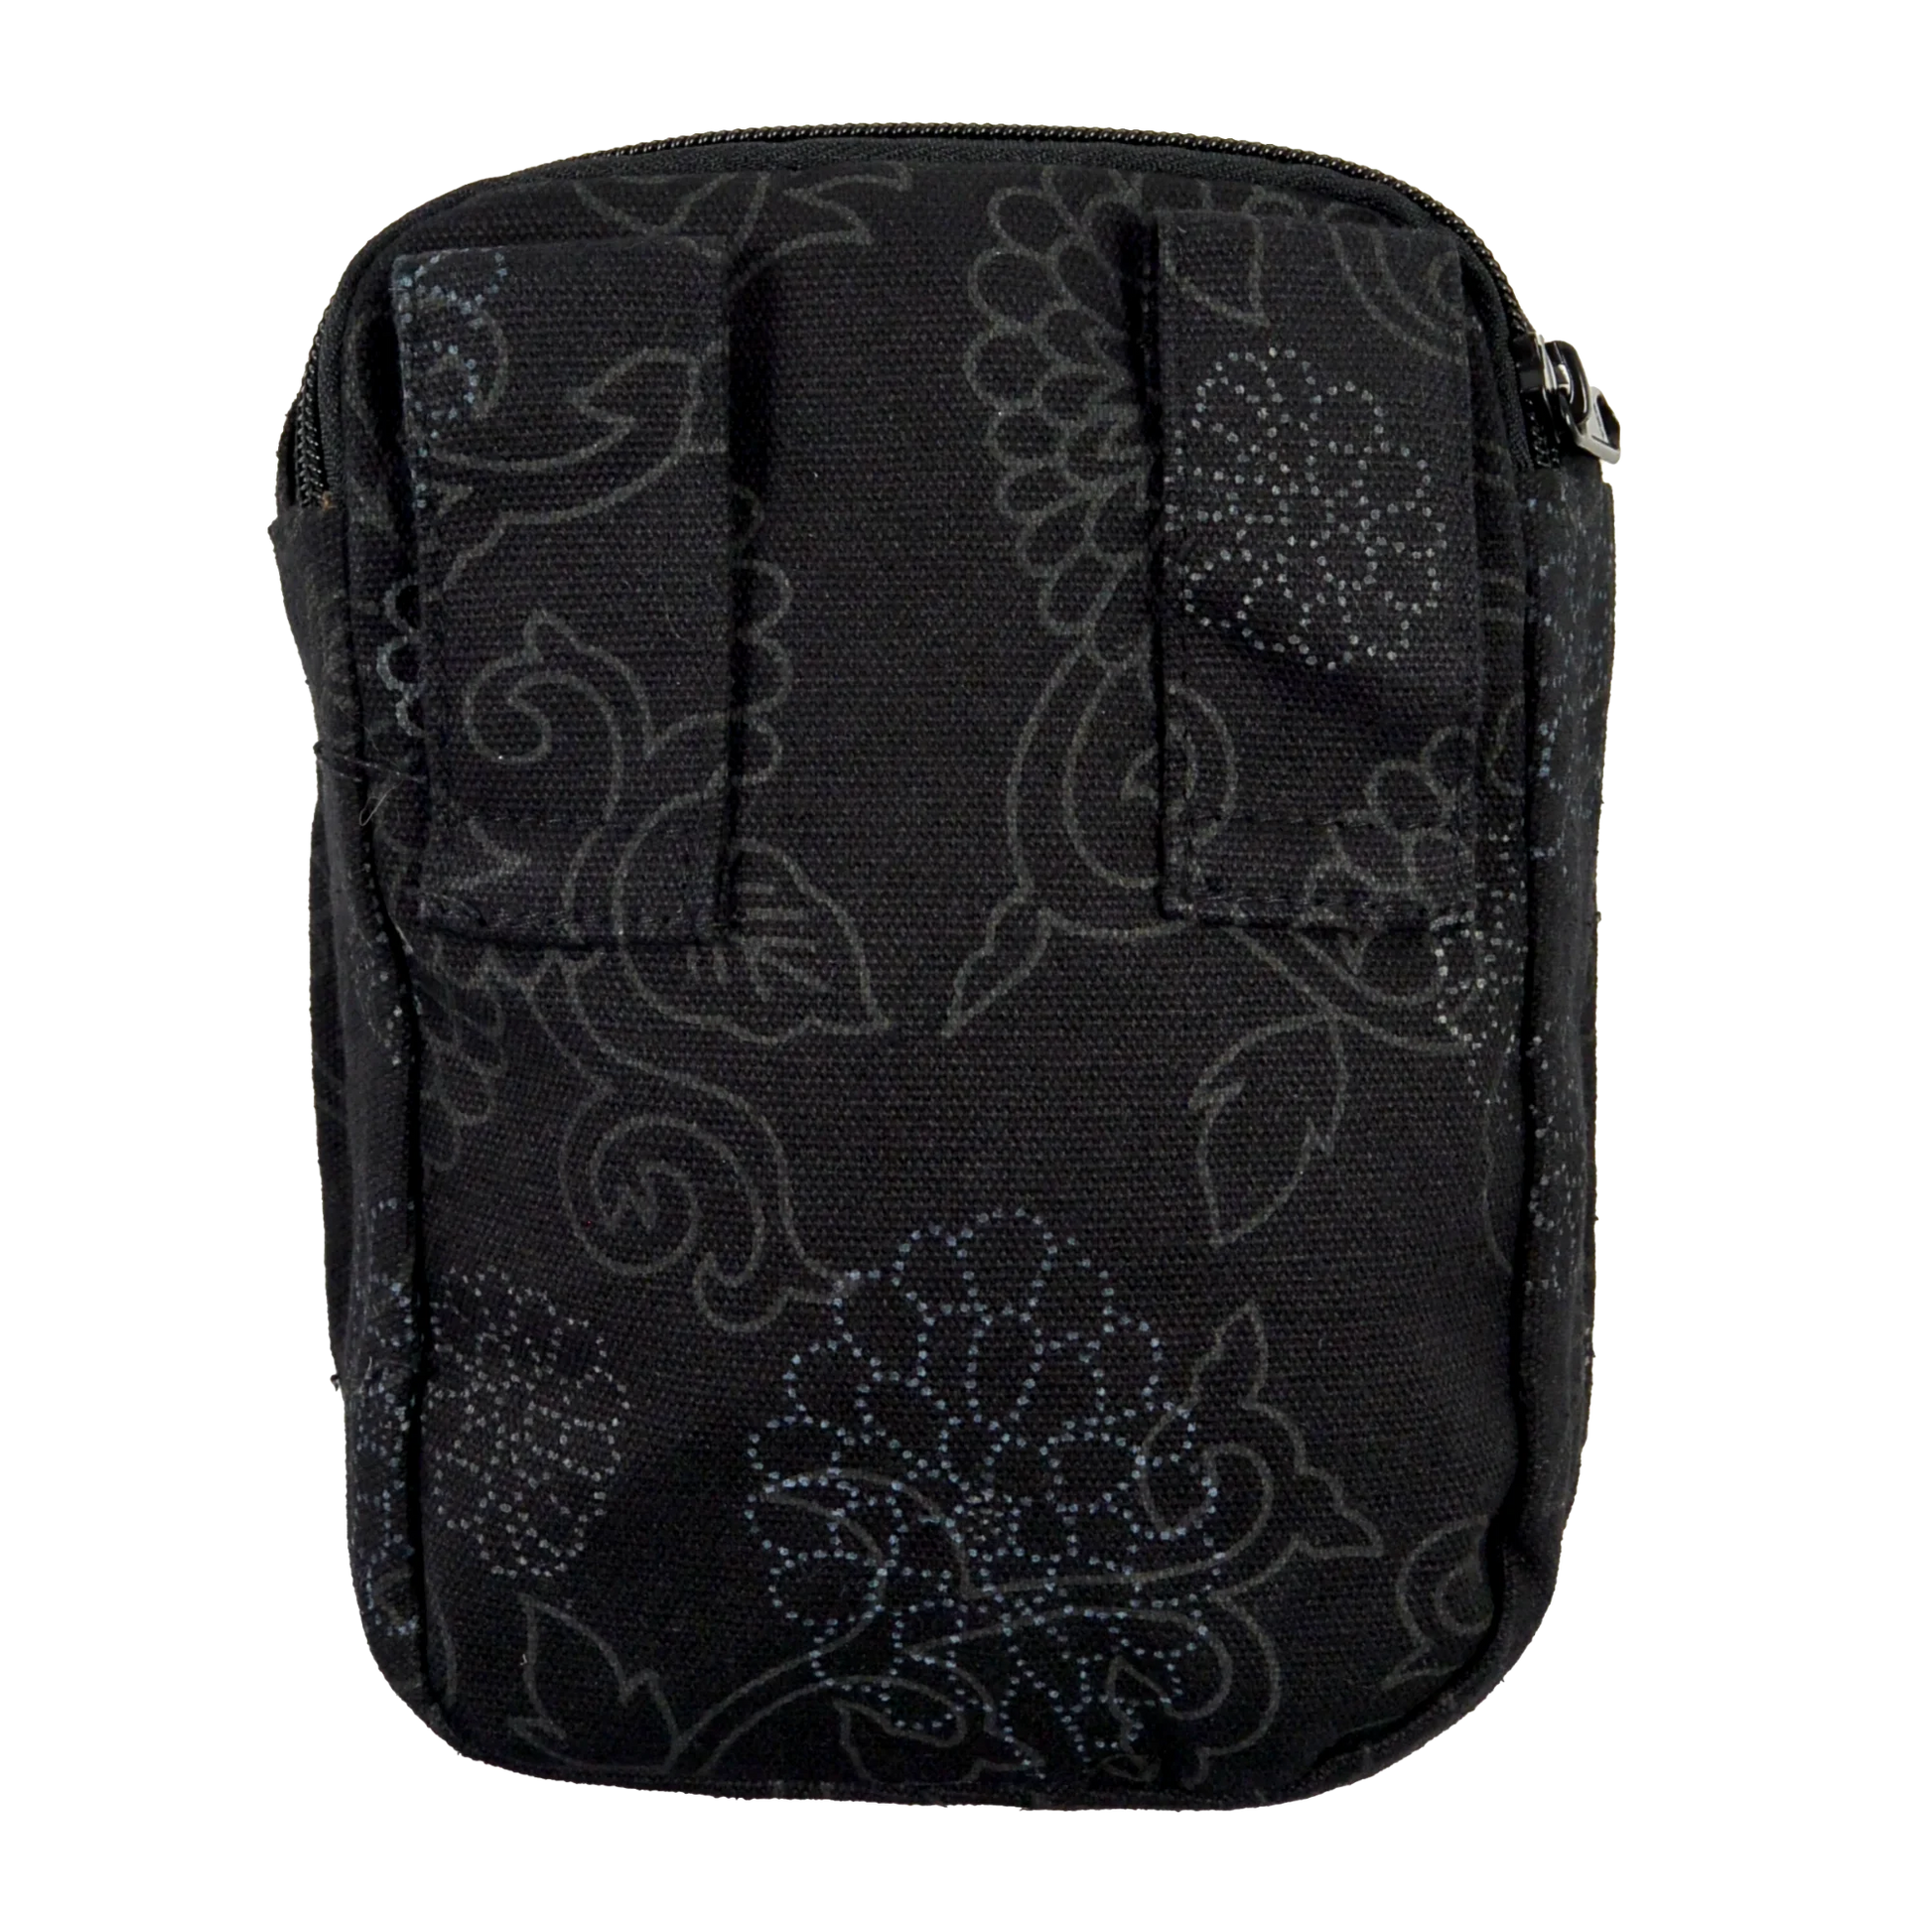 Beuteltasche Baumwolle, schwarz mit floralem Muster und zwei Gürtelschlaufen zum Anbringen an Gürtel.